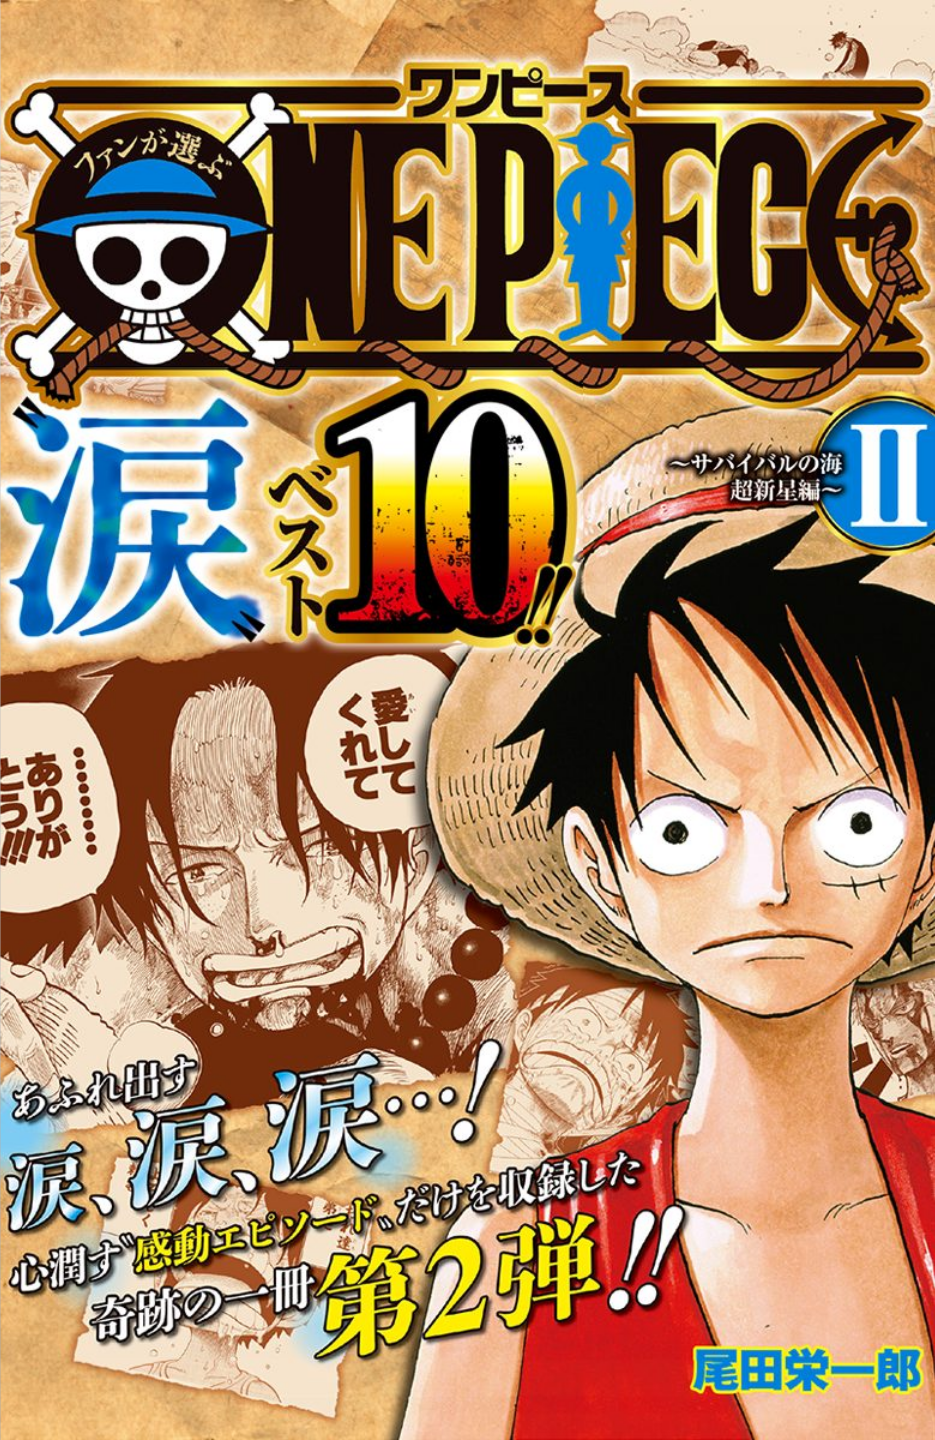 Fan S Choice One Piece Tears Best 10 One Piece Wiki Fandom